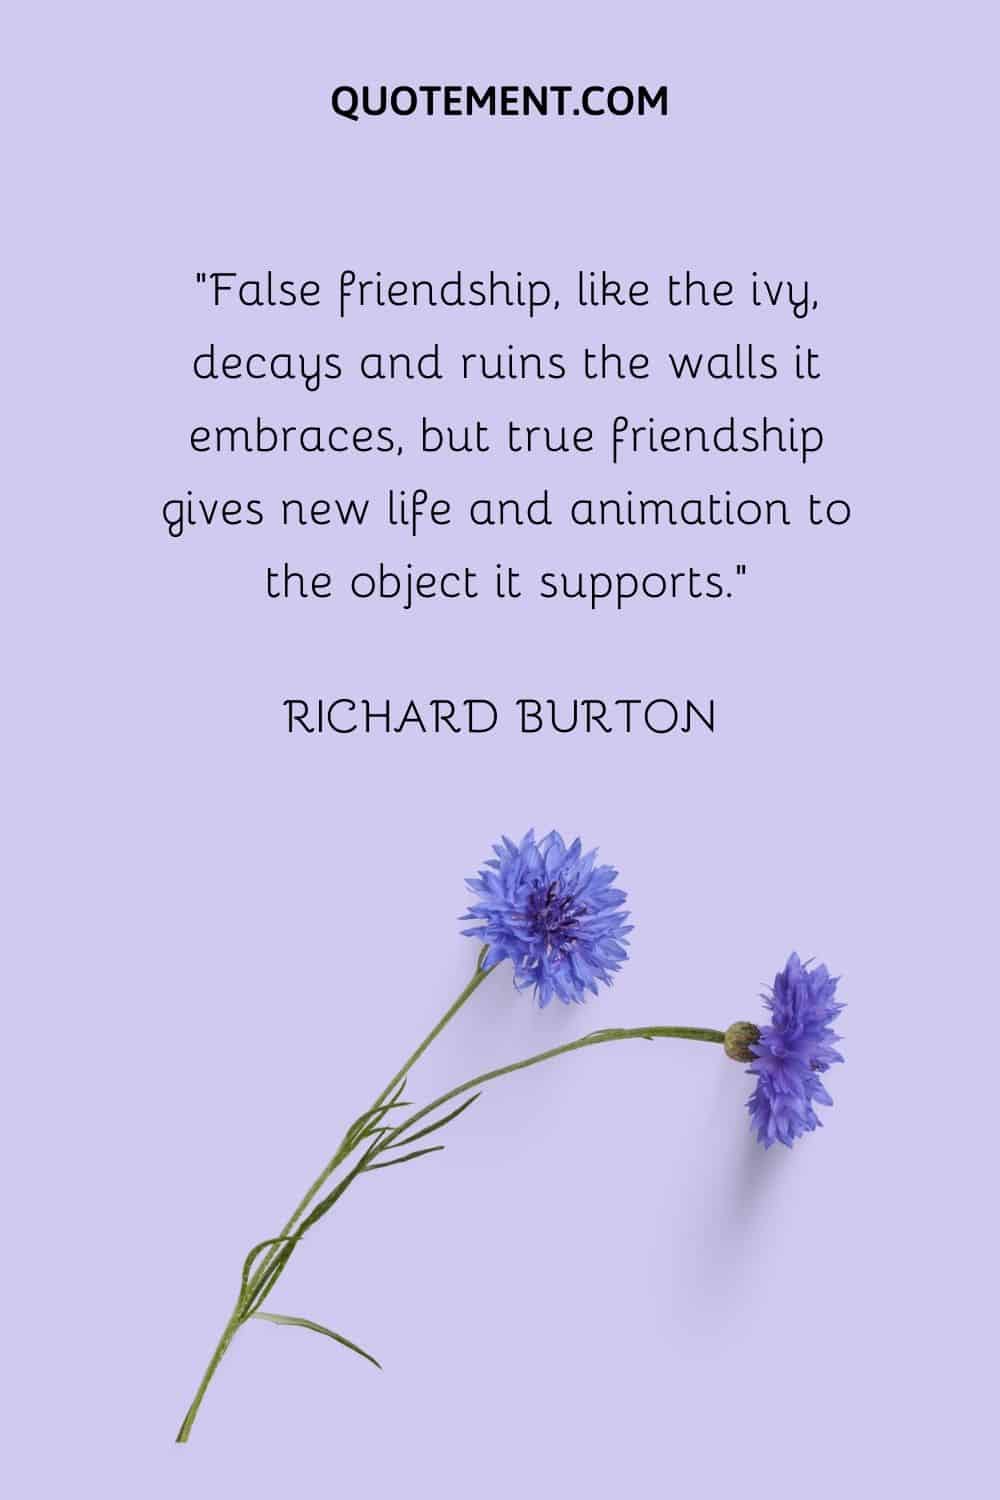 False friendship, like the ivy